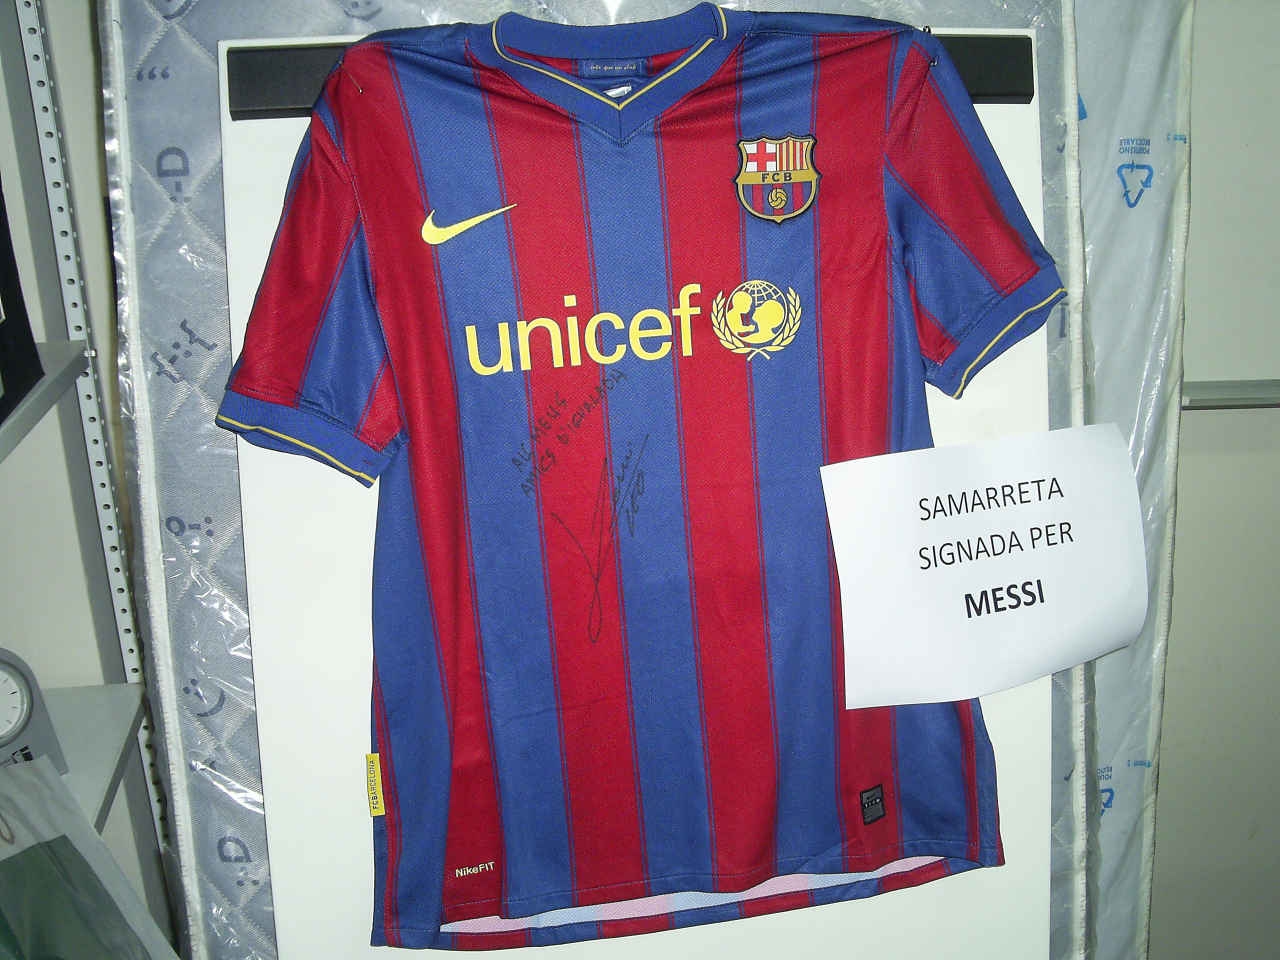 Un dels regals de la tómbola, una samarreta del Barça signada per Leo Messi